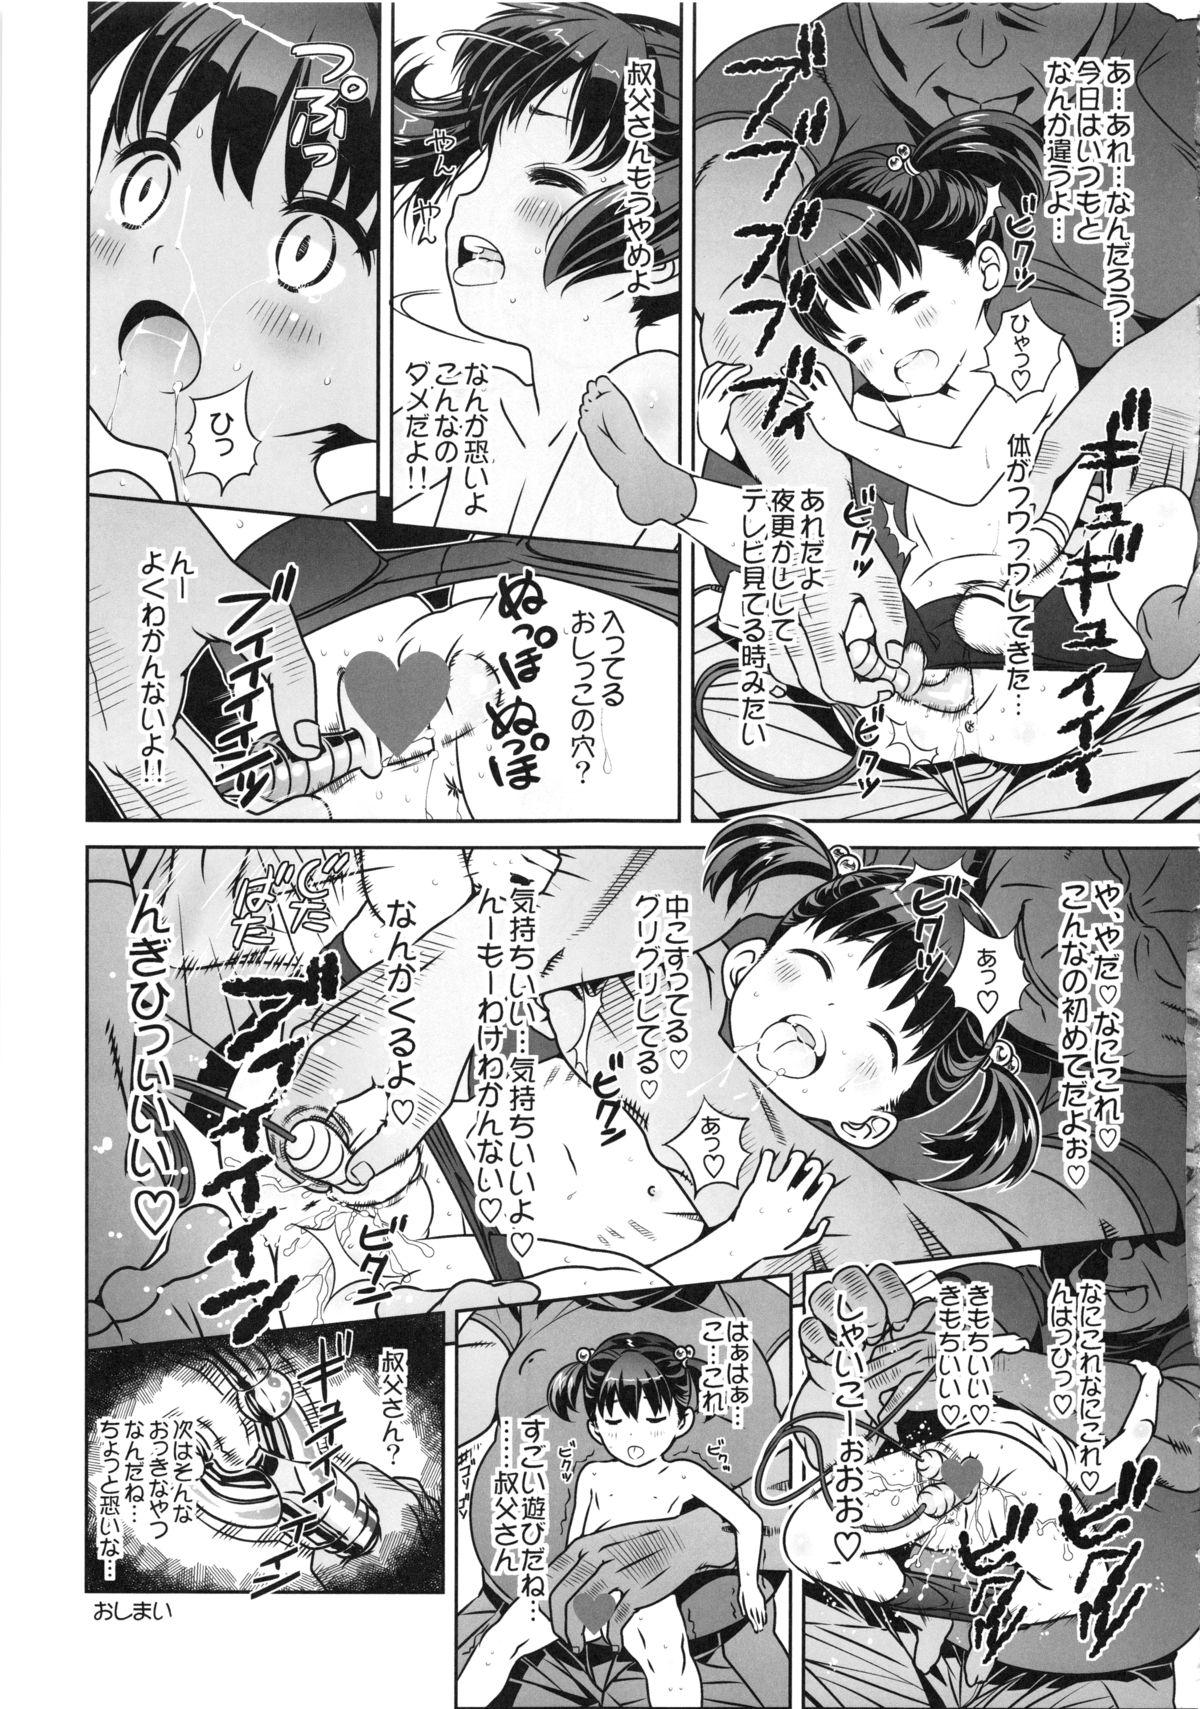 Strap On Shougakusei 11 Price - Page 11